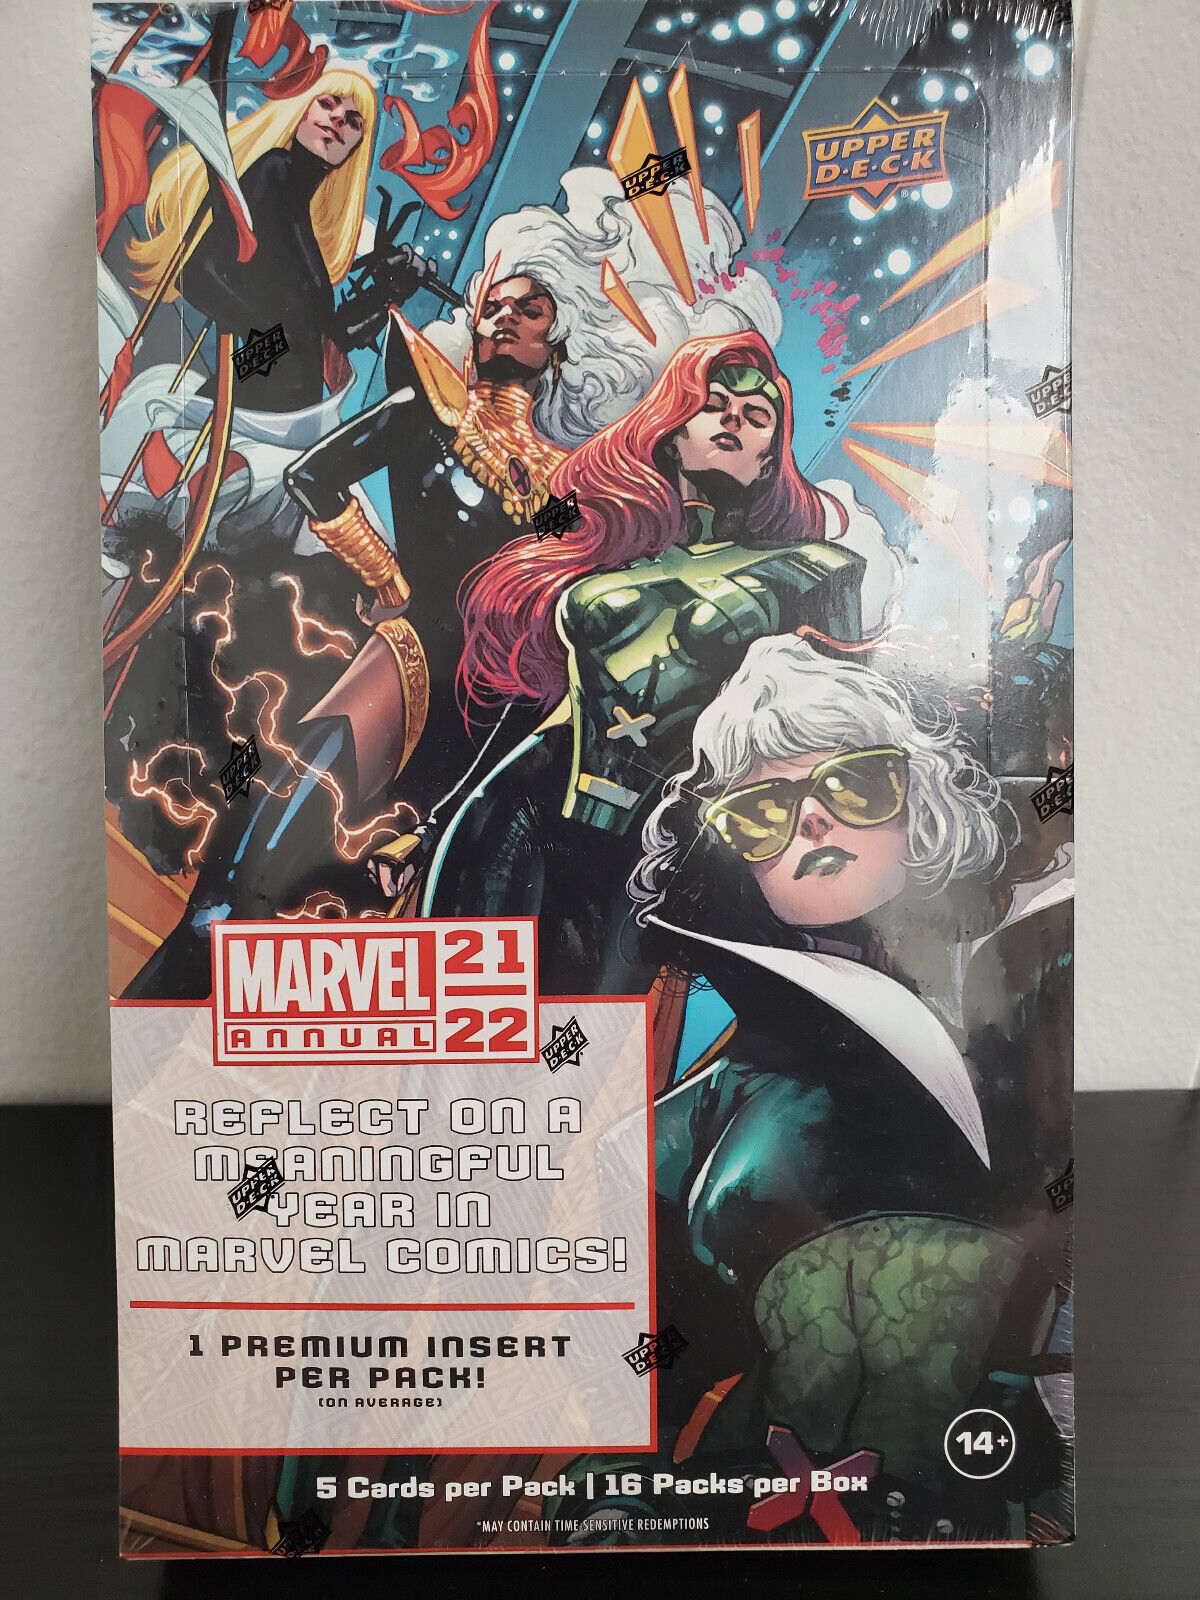 Upper Deck 2021-22 Marvel Annual Hobby Box - 16 Packs